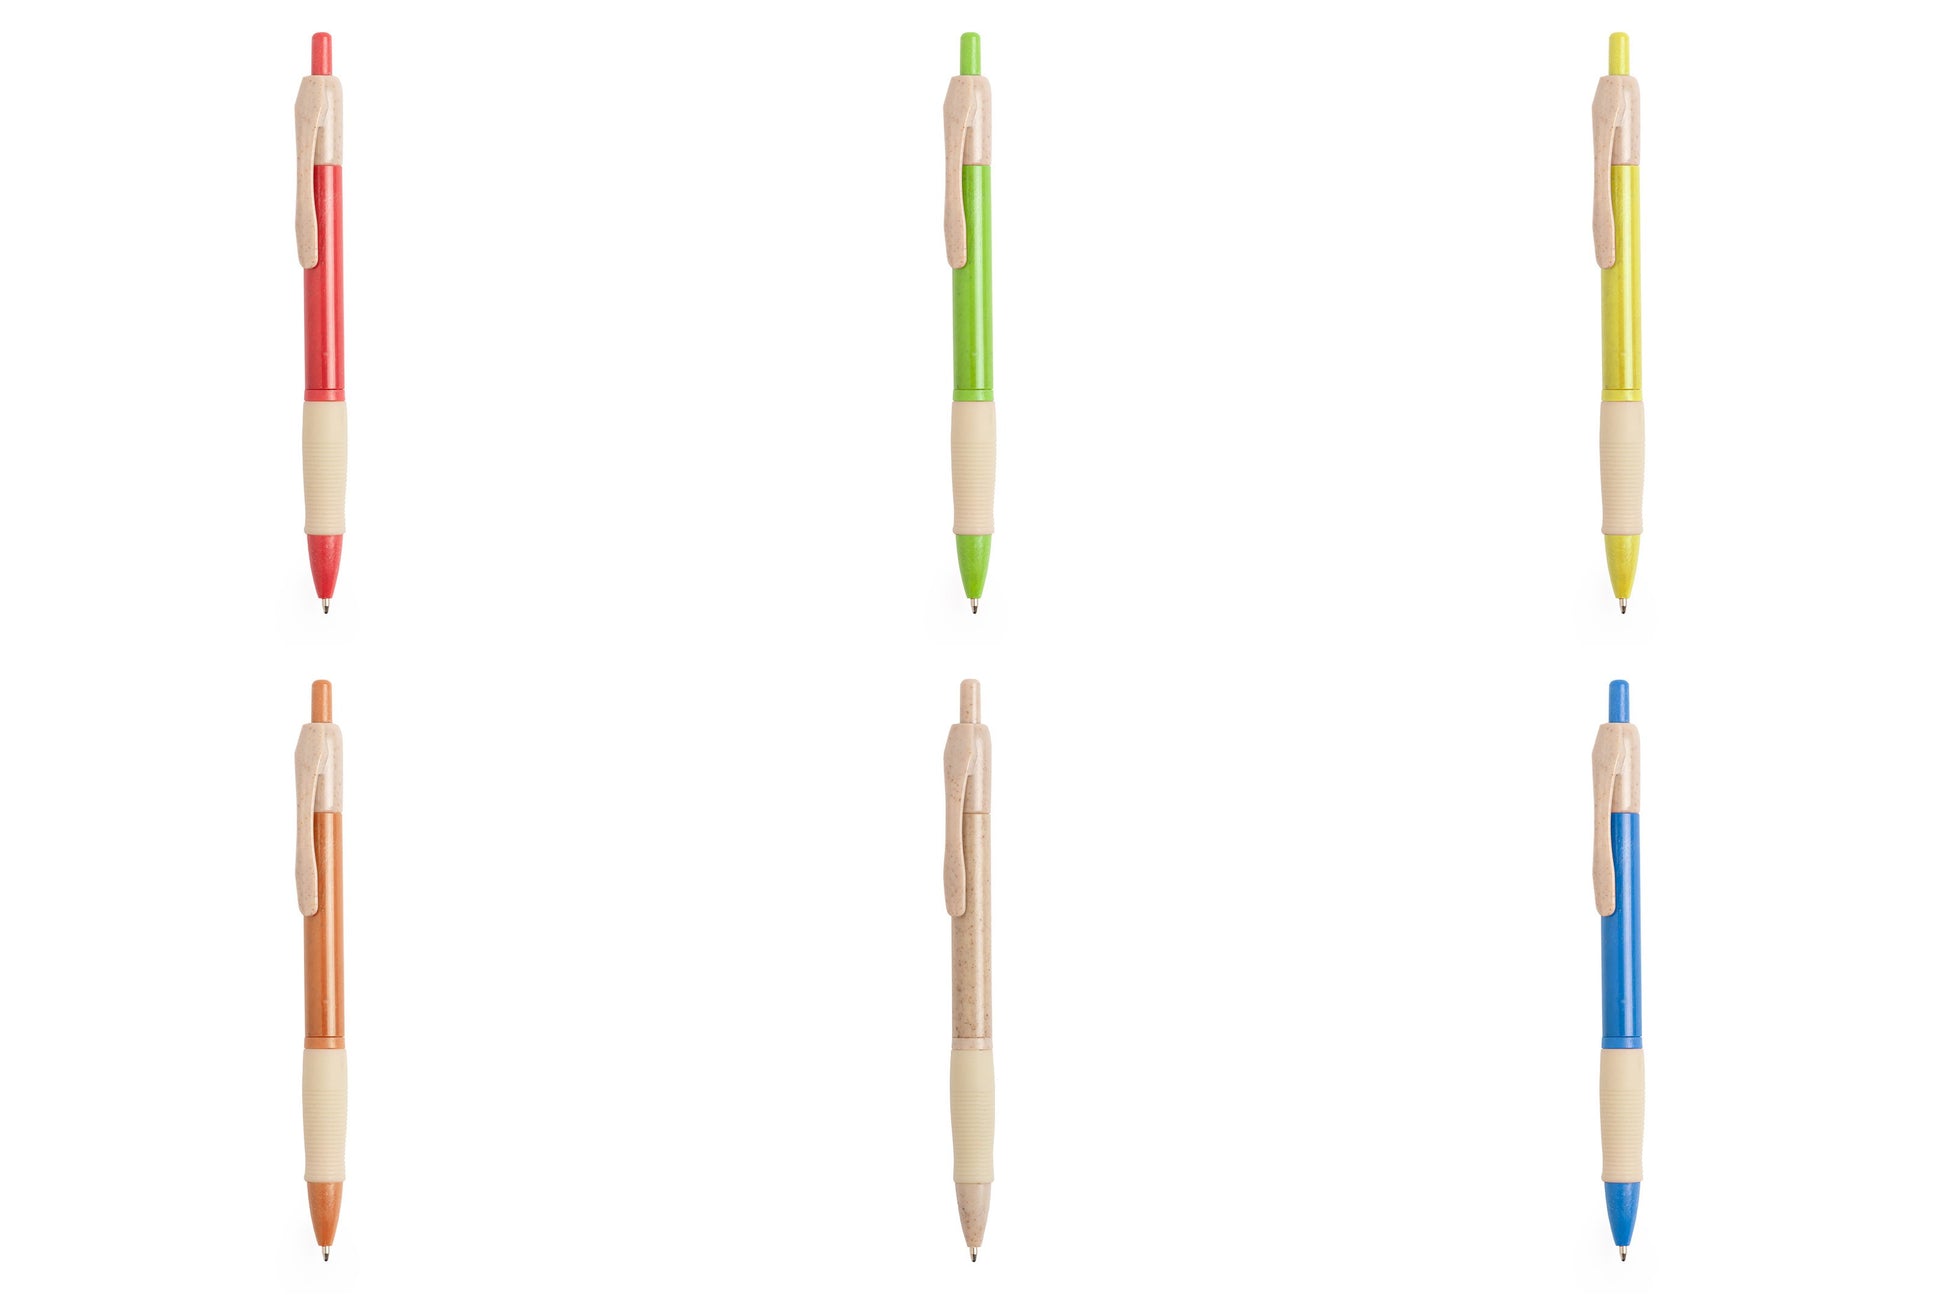 stylo rosdy Disponible dans une sélection de couleurs inspirées de la nature, ajoutant une touche esthétique.